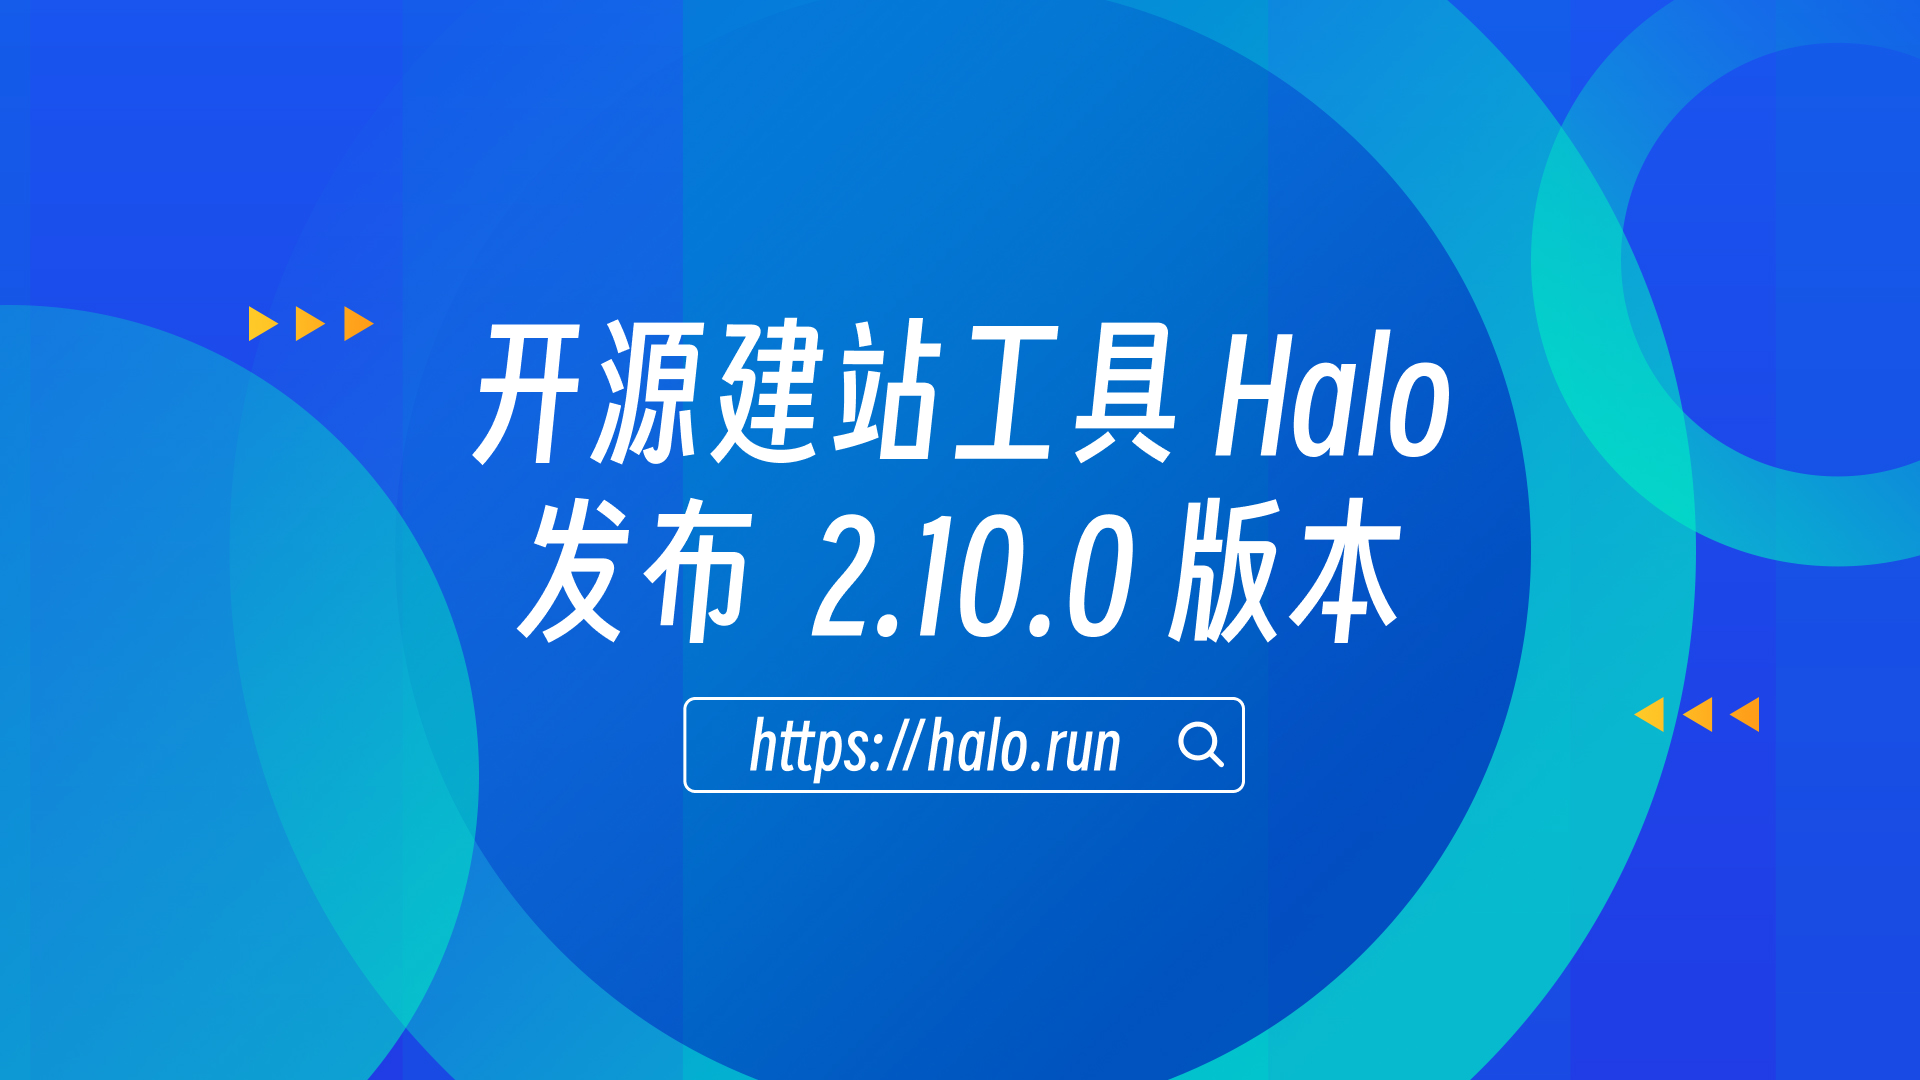 支持消息通知和预设应用市场，Halo 2.10.0 发布